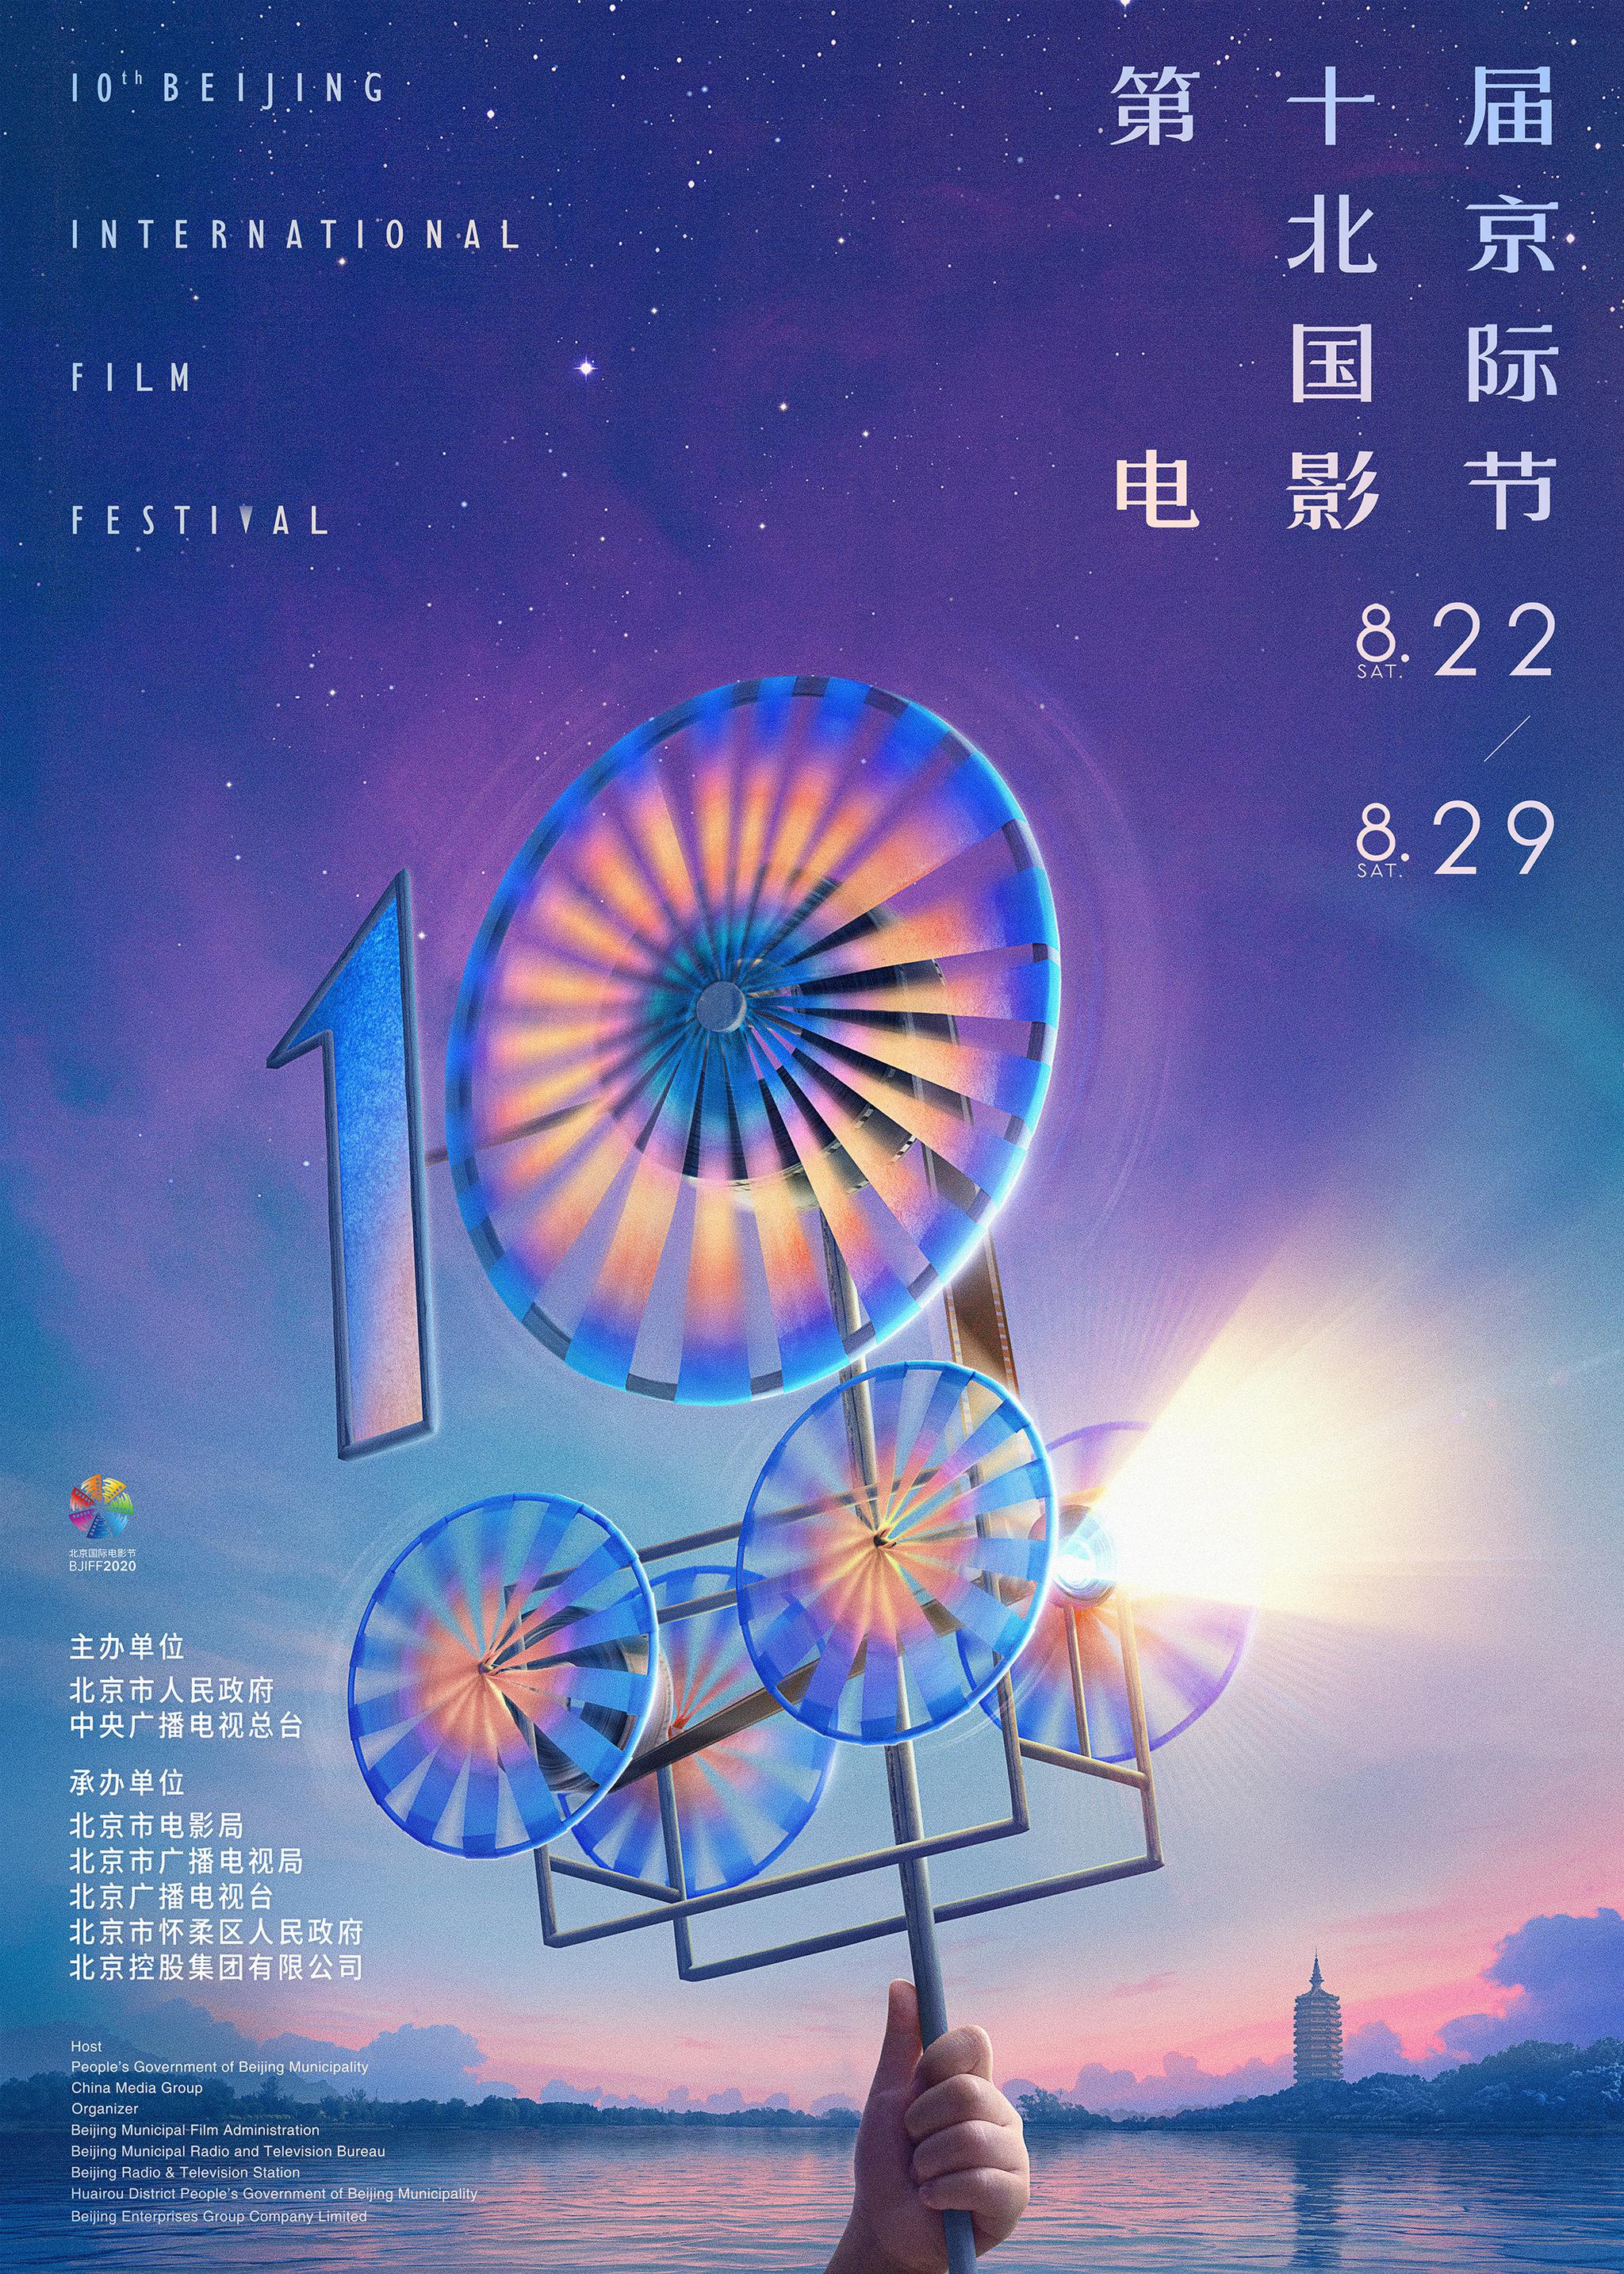 全景回顾丨第六届北京国际电影节-搜狐